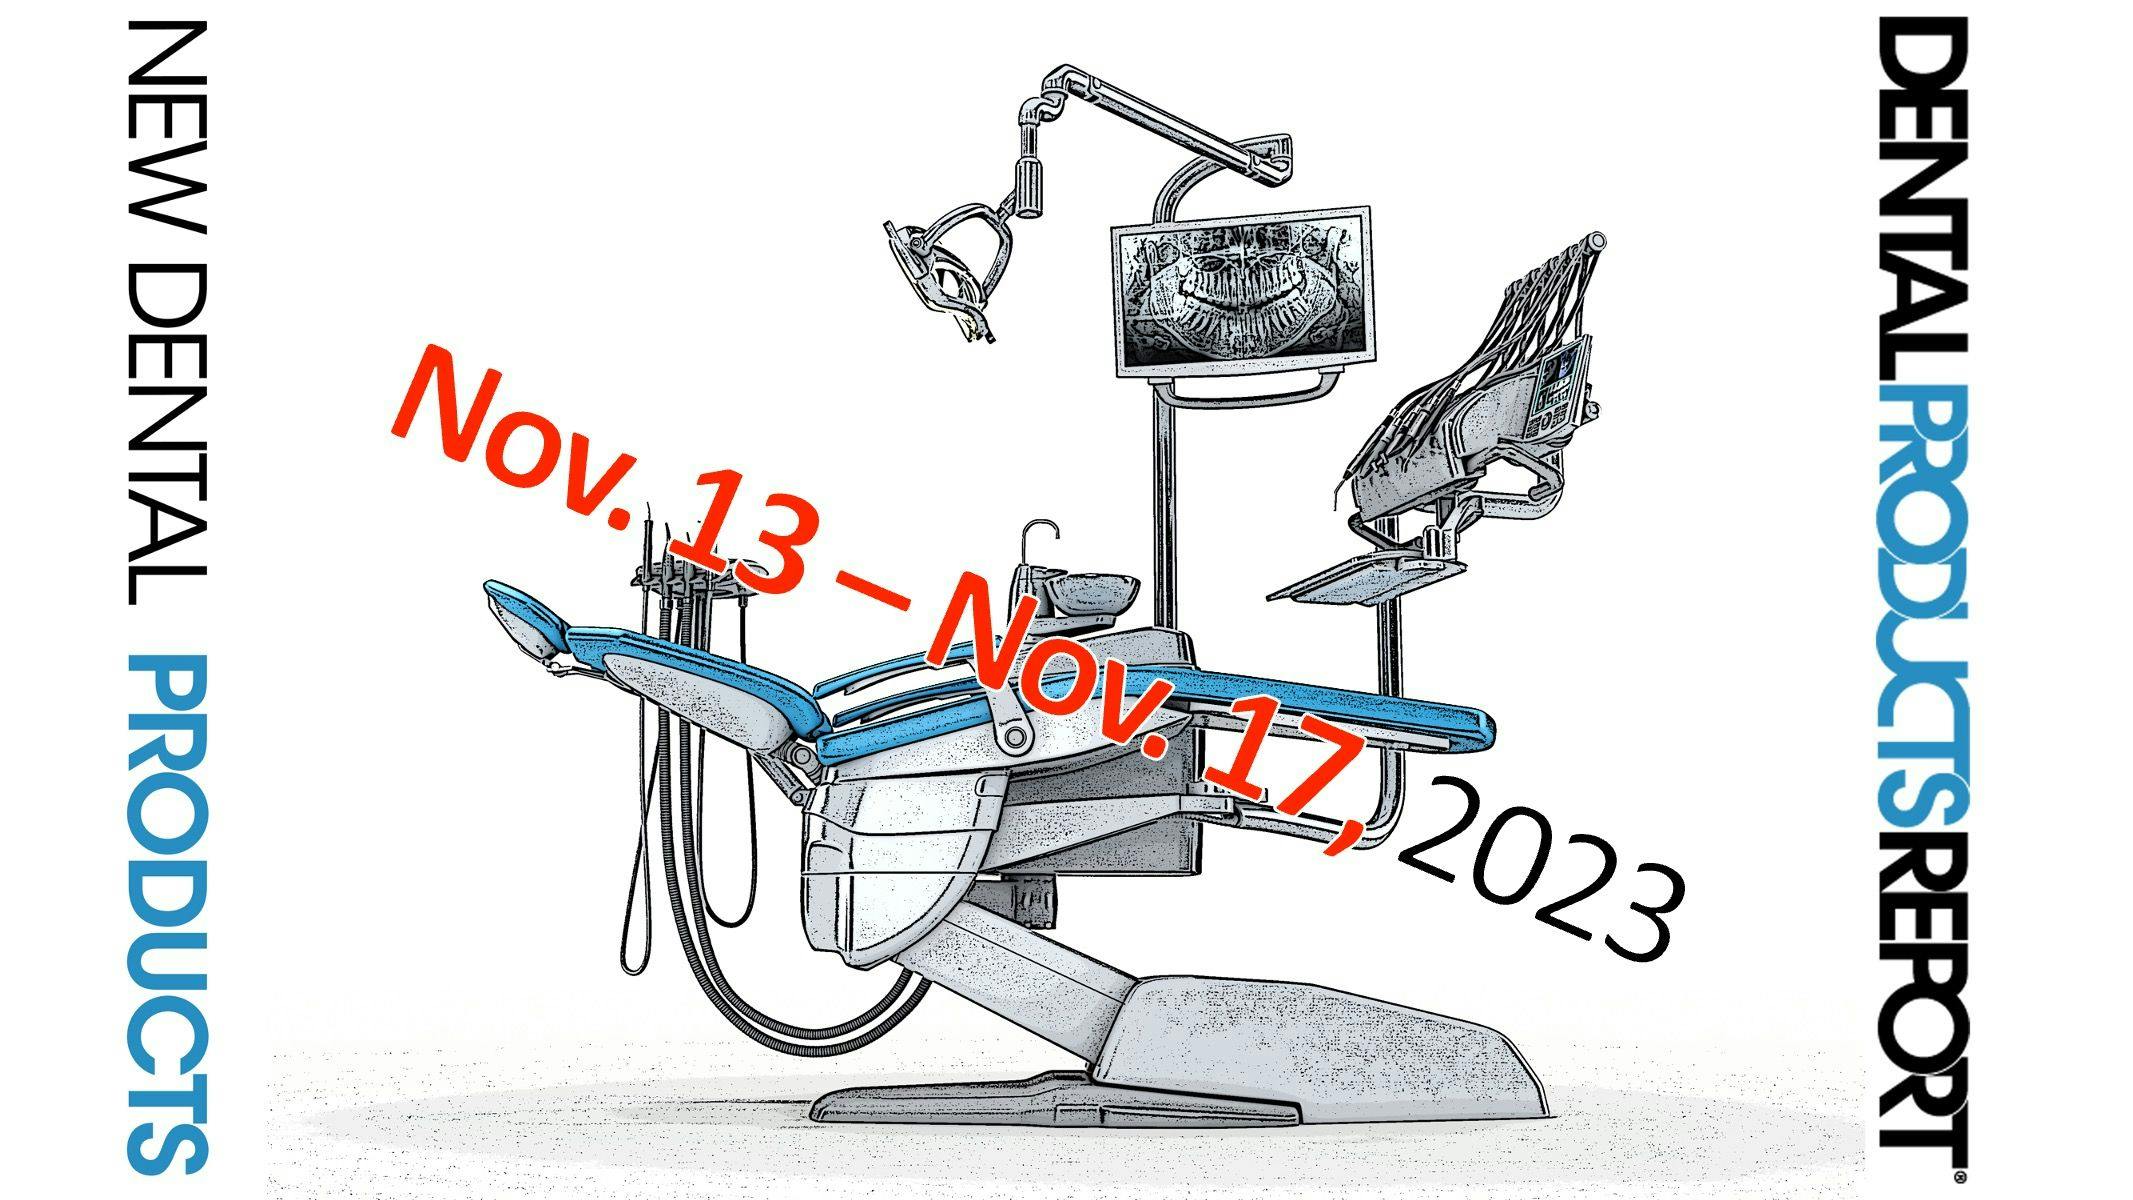 New Dental Products - November 13 - November 17, 2023